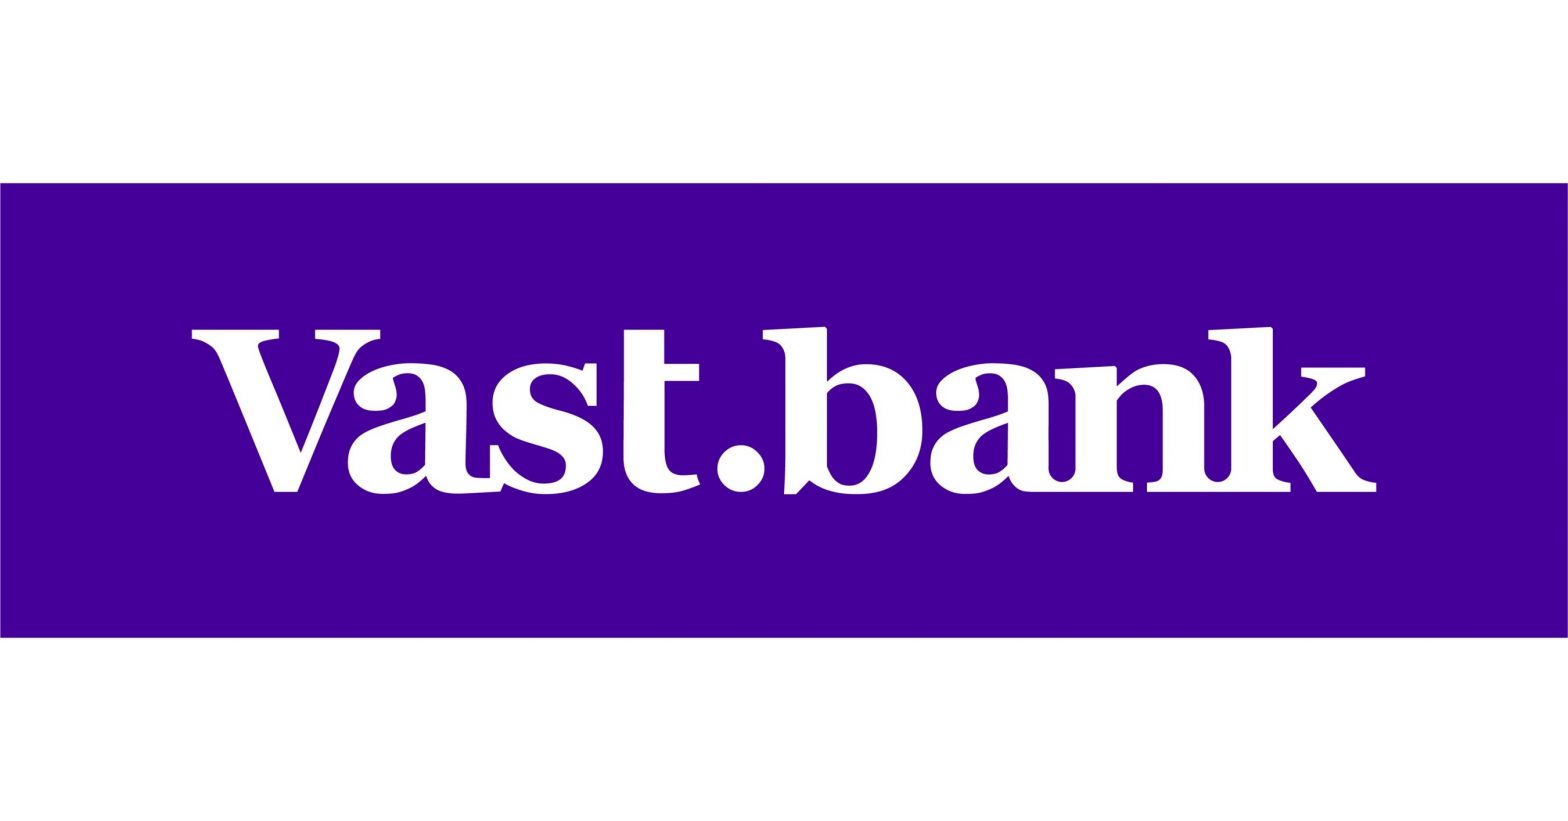 Vast_bank_logo-scaled